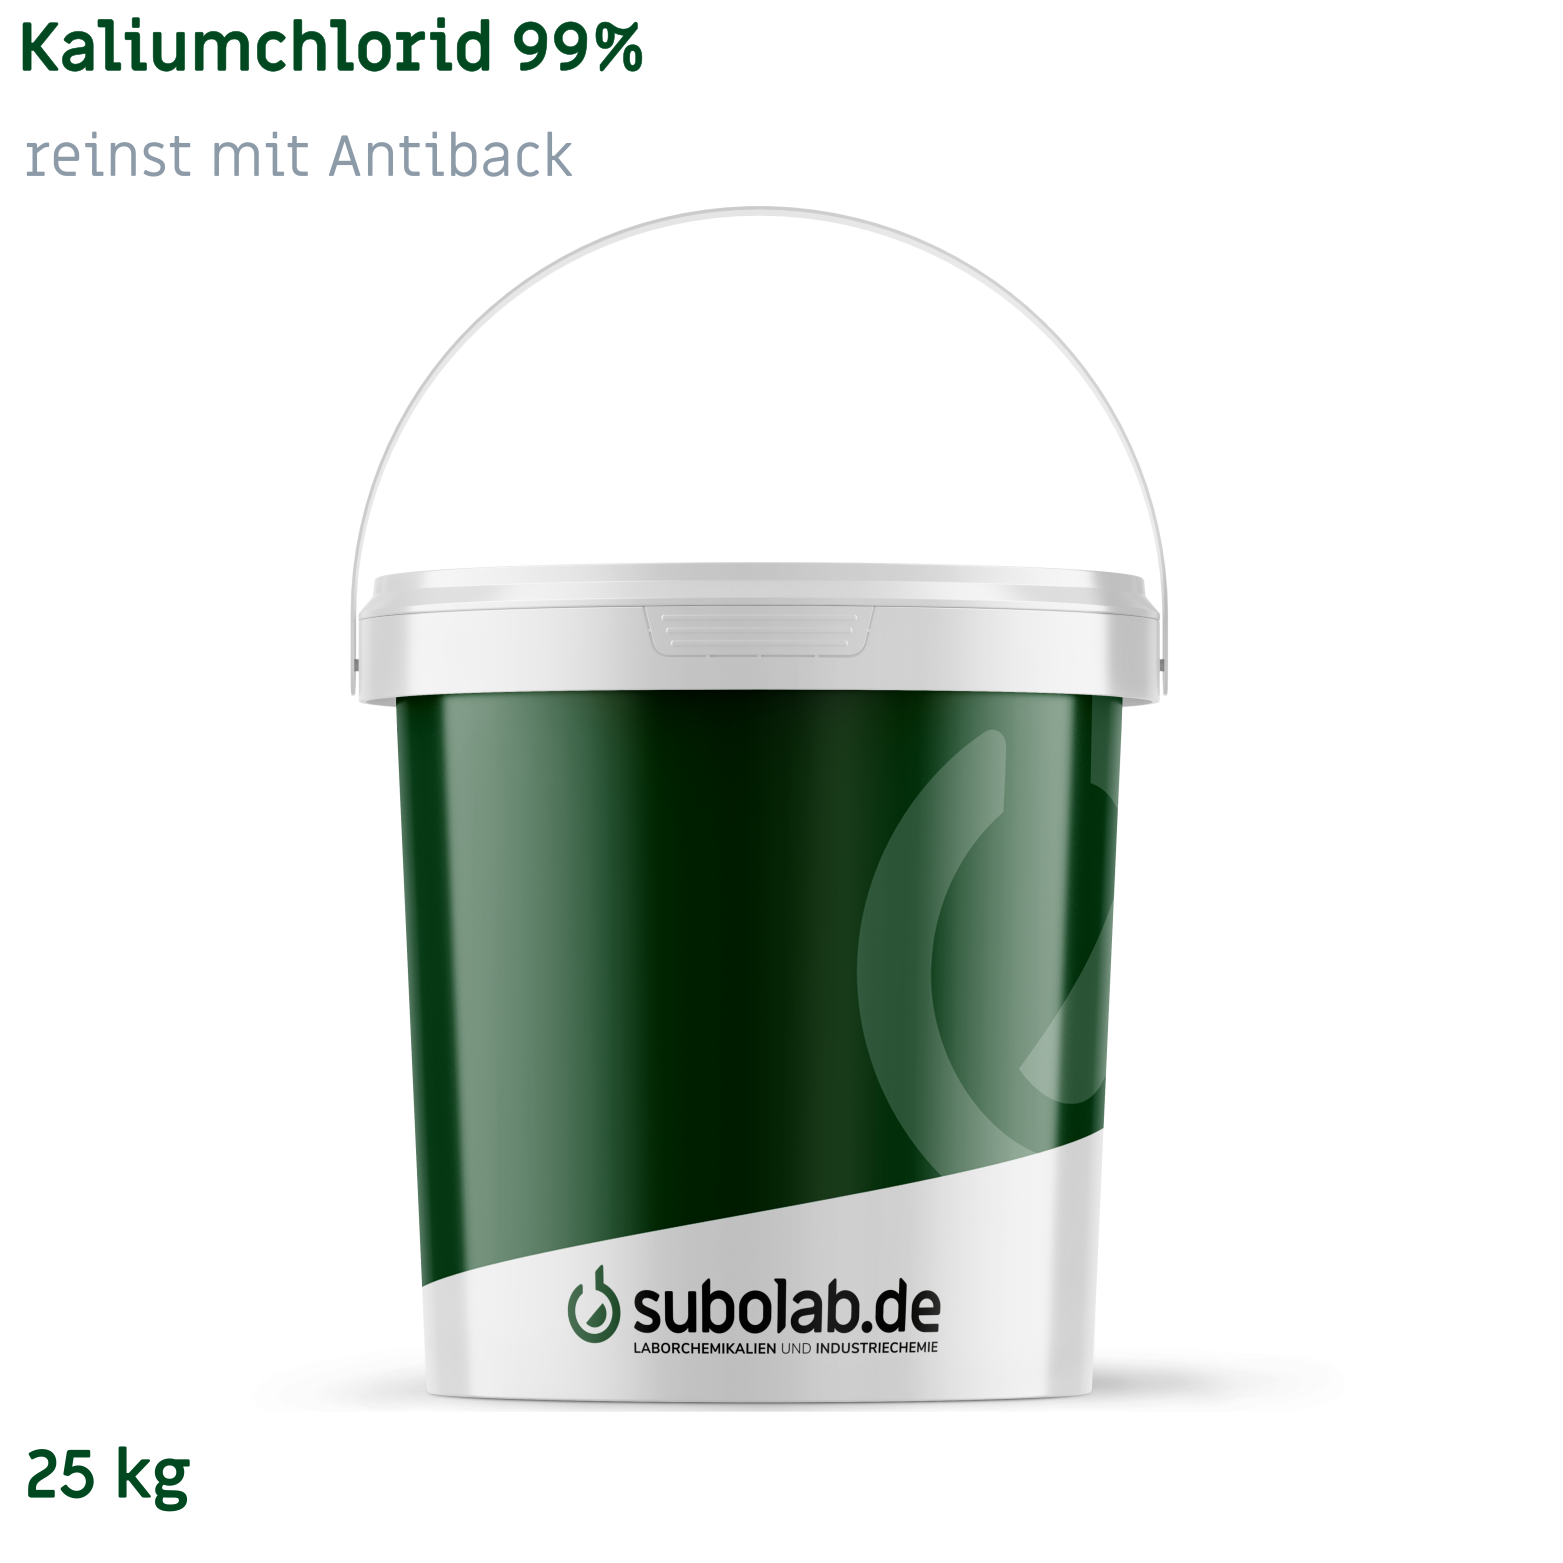 Bild von Kaliumchlorid 99% reinst mit Antiback (25 kg)